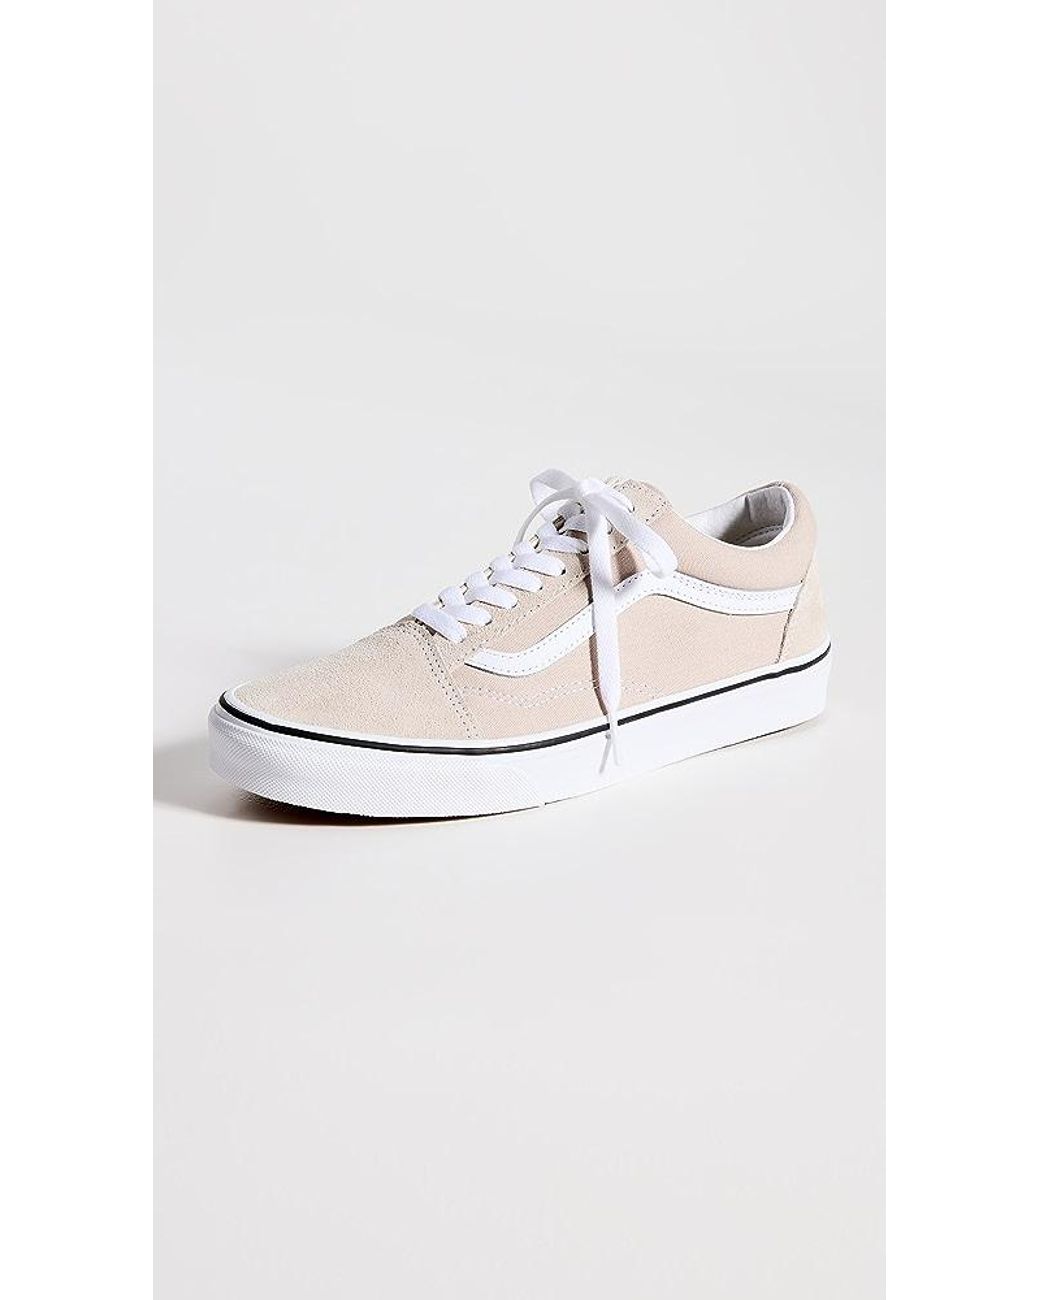 Vans Old Skool Sneakers in White | Lyst